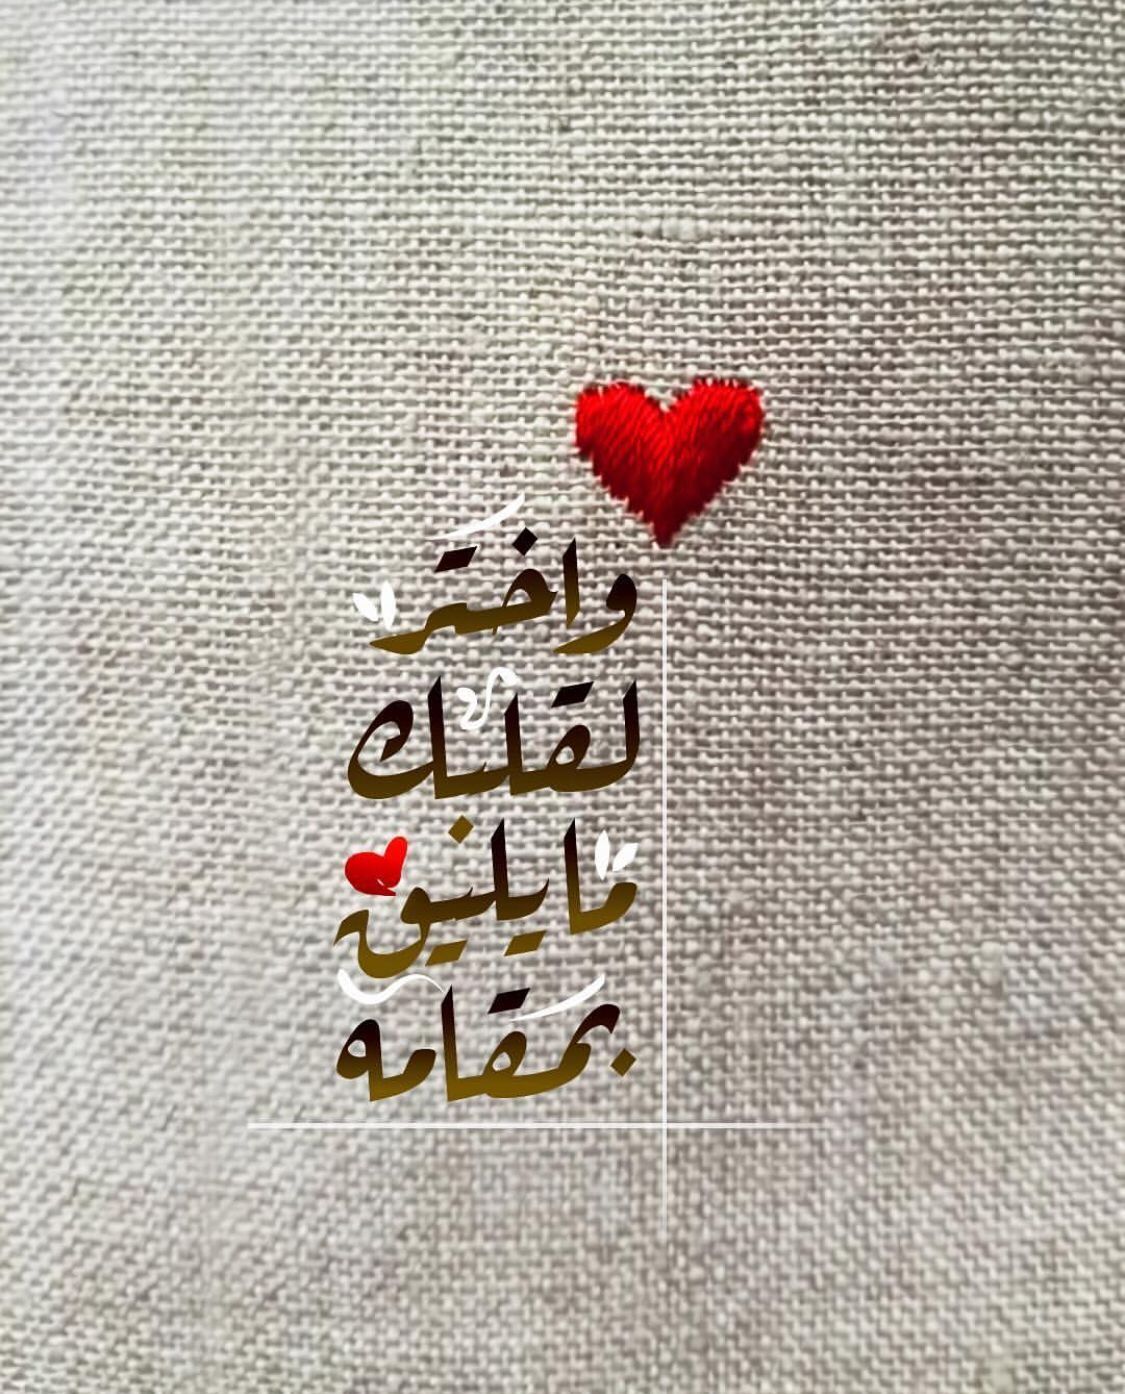 2964 6 كلام جميل في الحب- من اروع عبارات العشق خالد